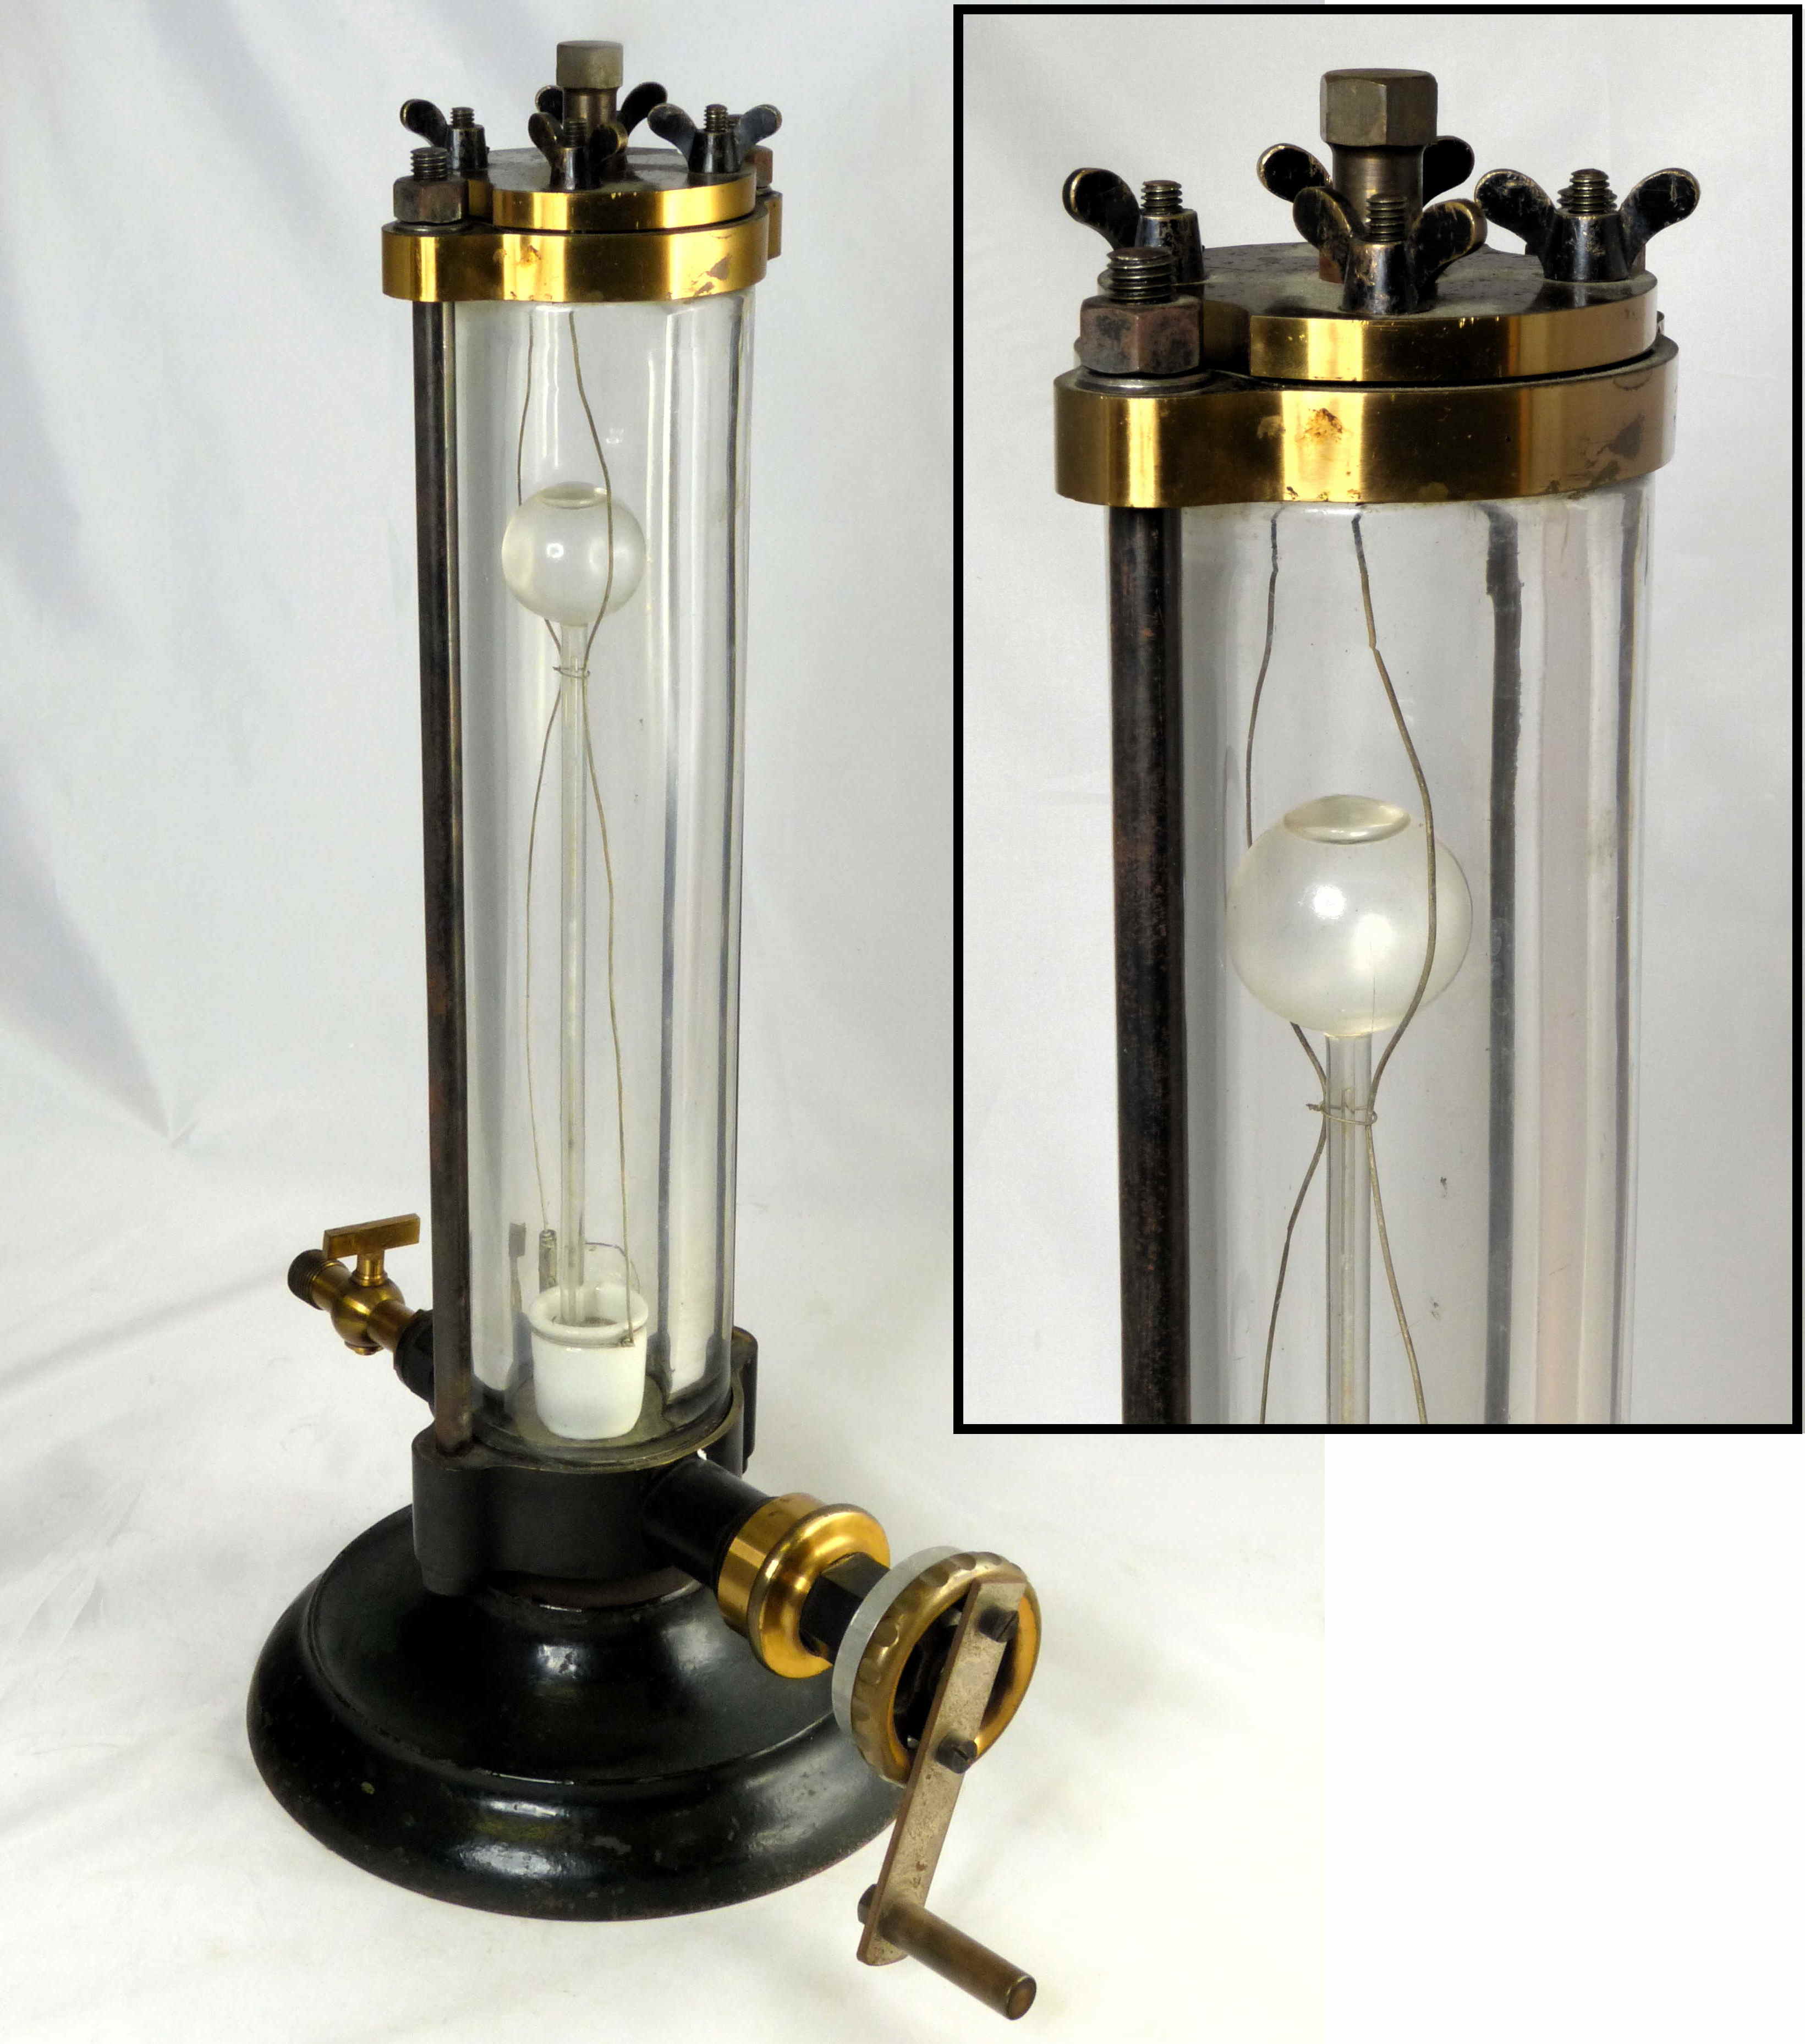 Cylindre de pression en verre
avec piézomètre d’Oersted